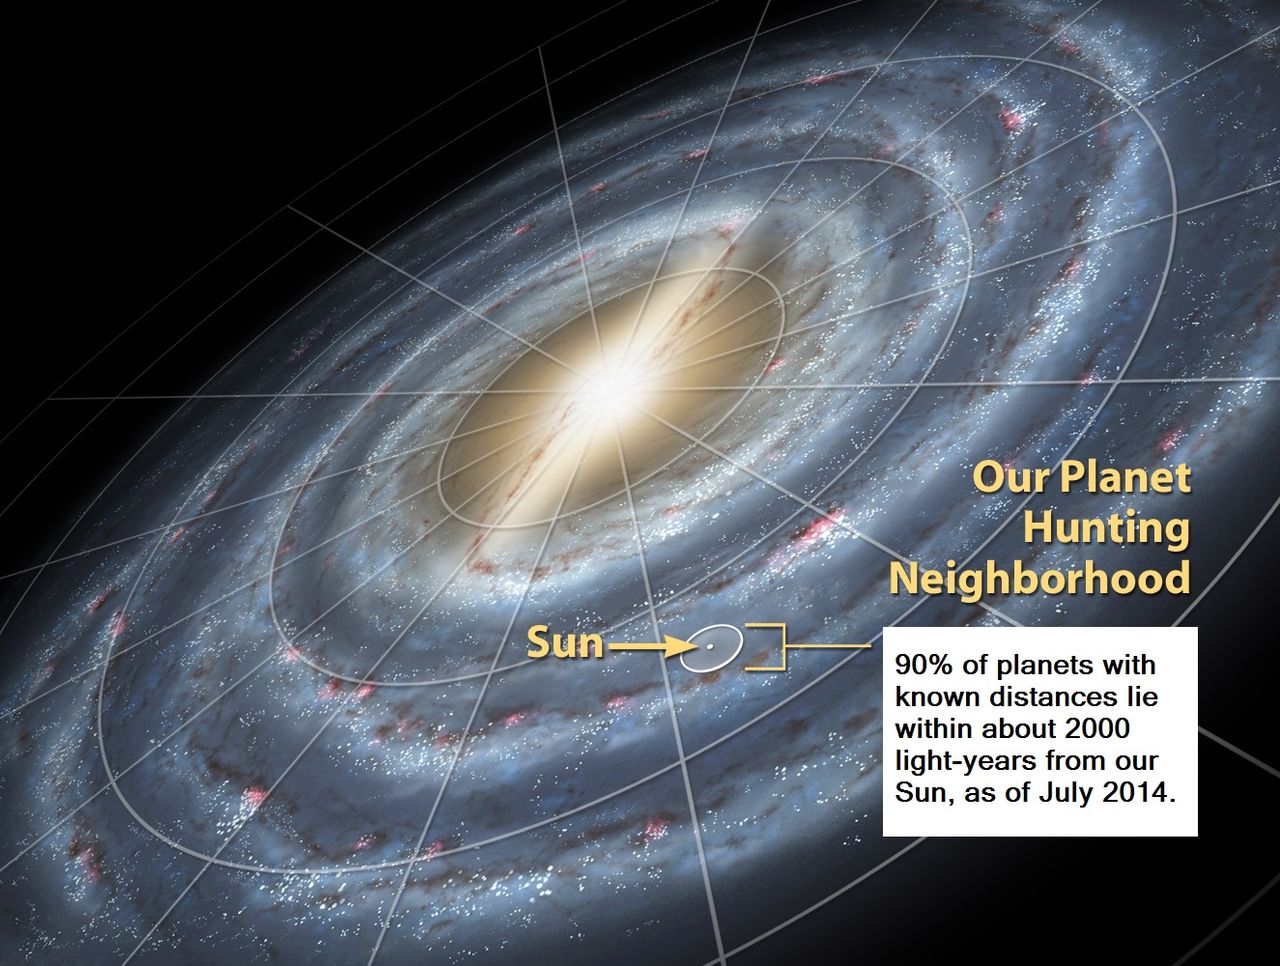 Ubicación del Sol y de nuestro Sistema Solar dentro de la Vía Láctea. Imagen: NASA. Fuente: Wikipedia.